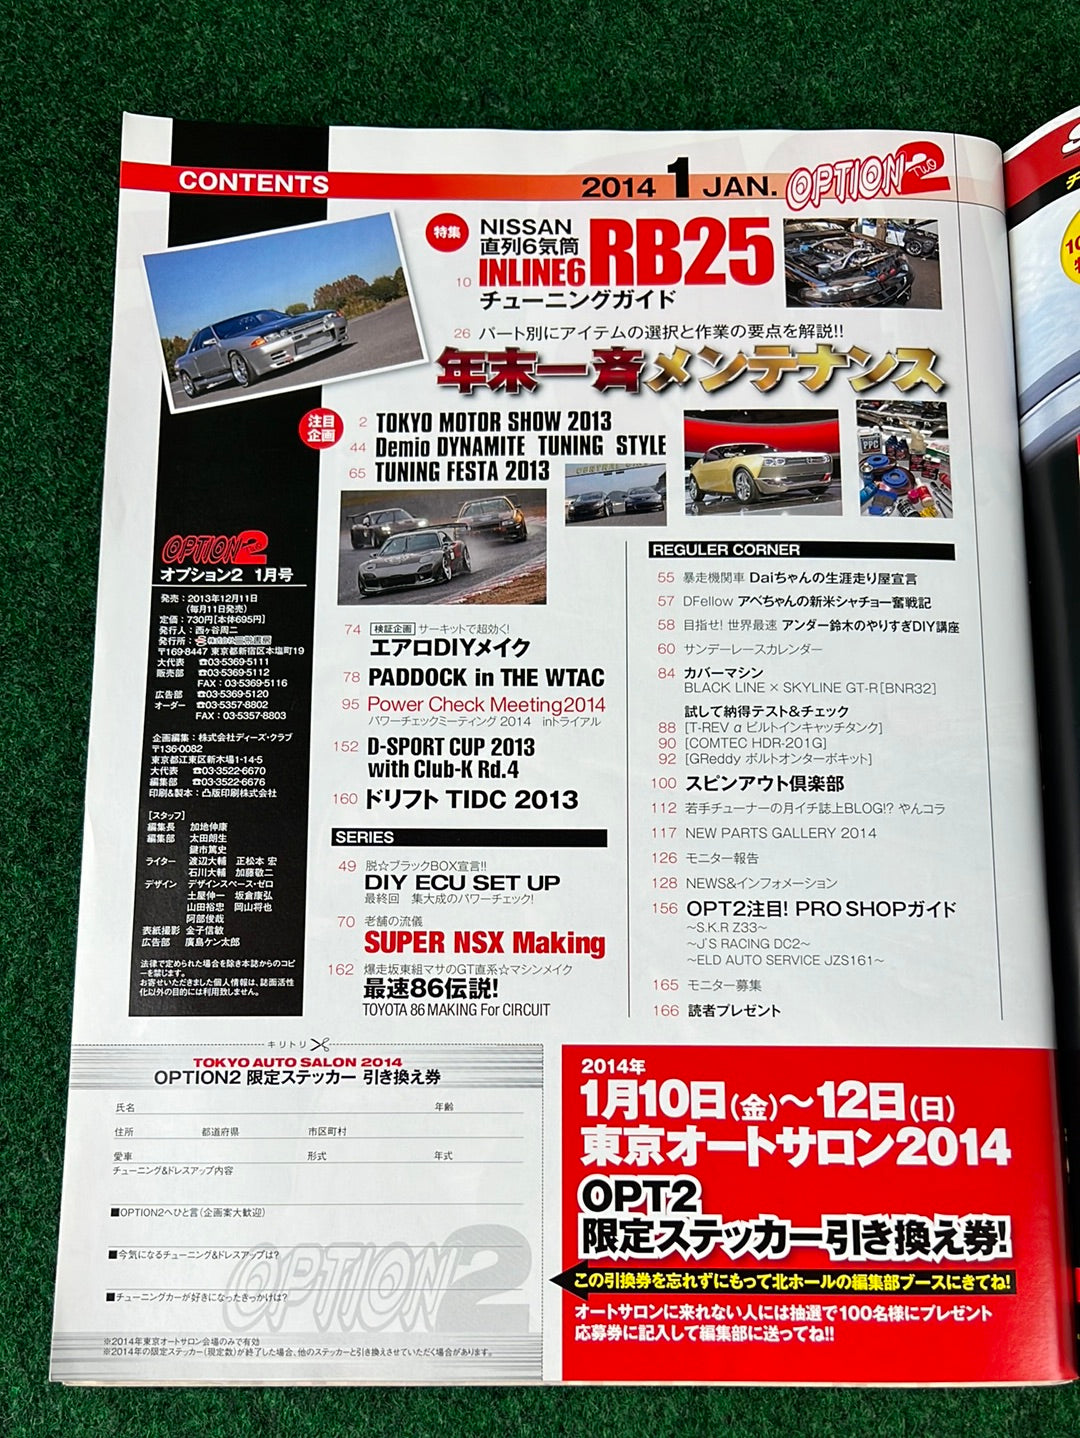 Option2 Magazine - January 2014